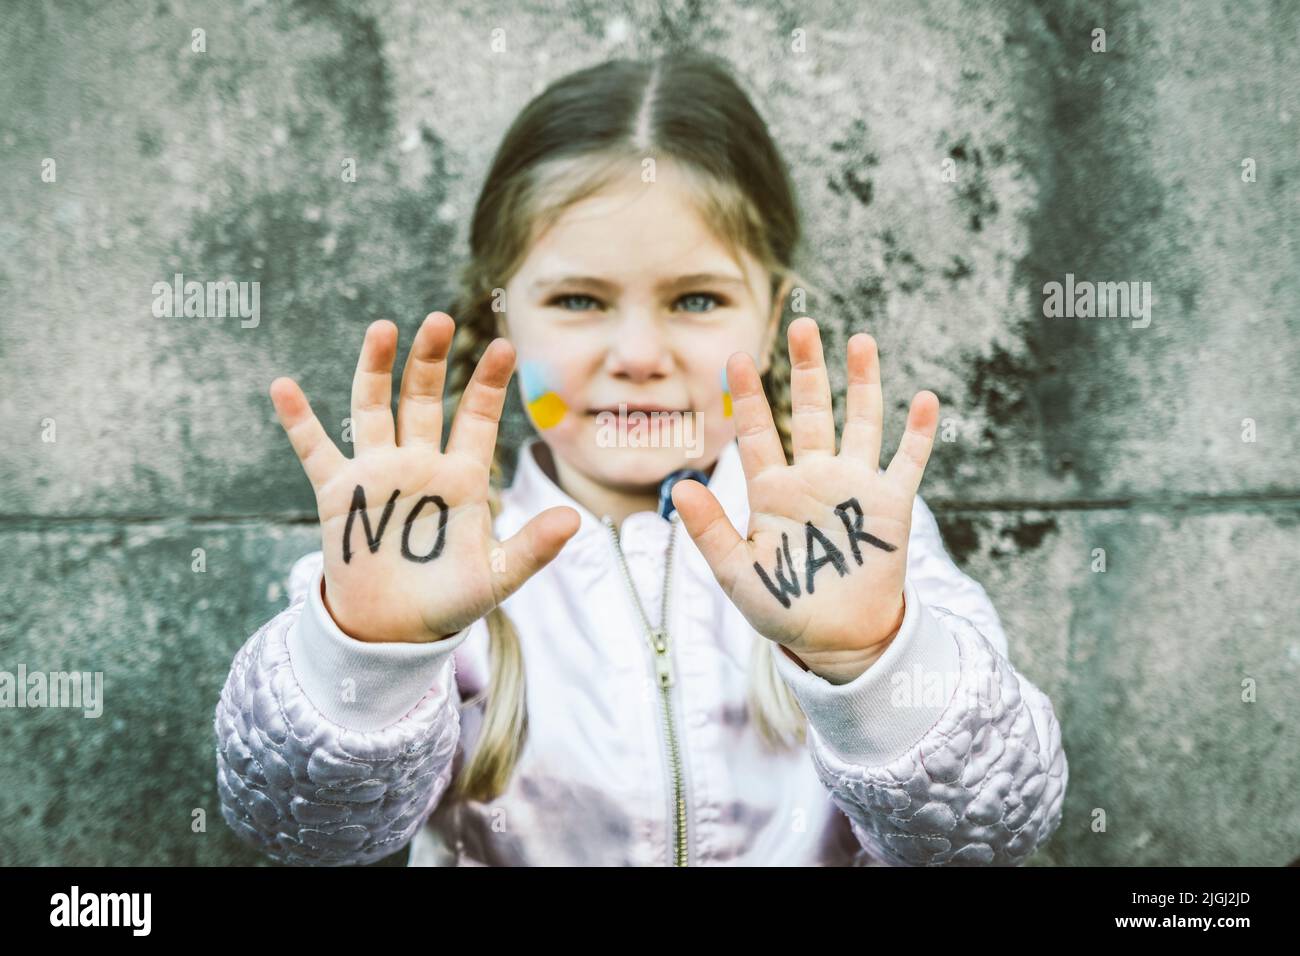 Bella e spaventata iscrizione bambino NON GUERRA sulle sue mani. L'invasione russa dell'Ucraina, bambini contro la guerra Foto Stock